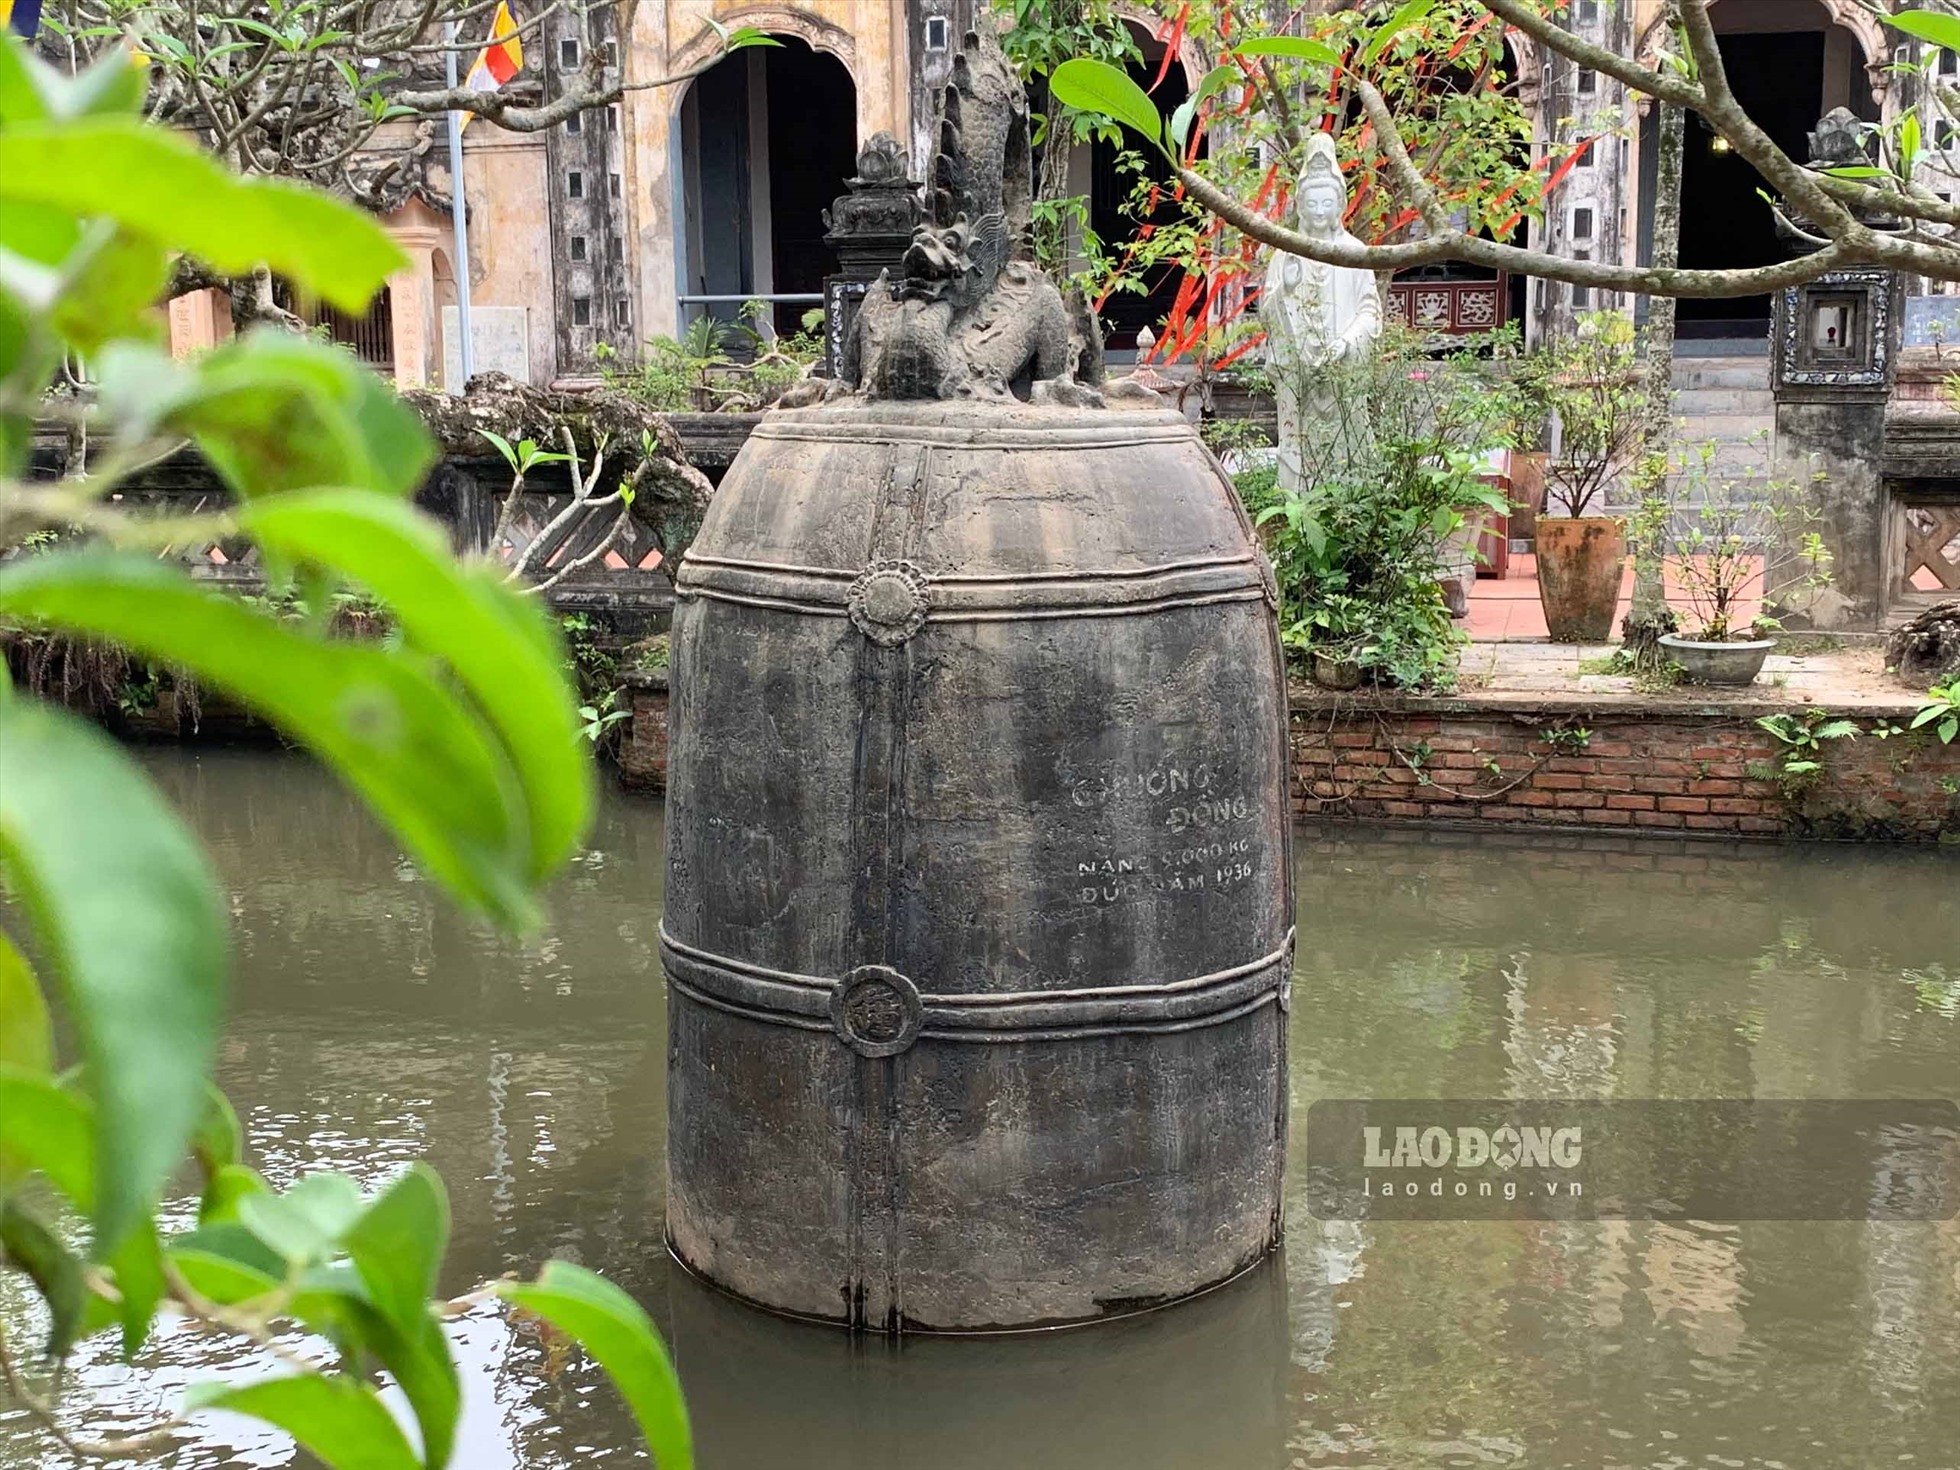 Vì sao quả chuông dưới hồ nước của chùa Cổ Lễ ở Nam Định lại chưa một lần được thỉnh tiếng? - Ảnh 6.